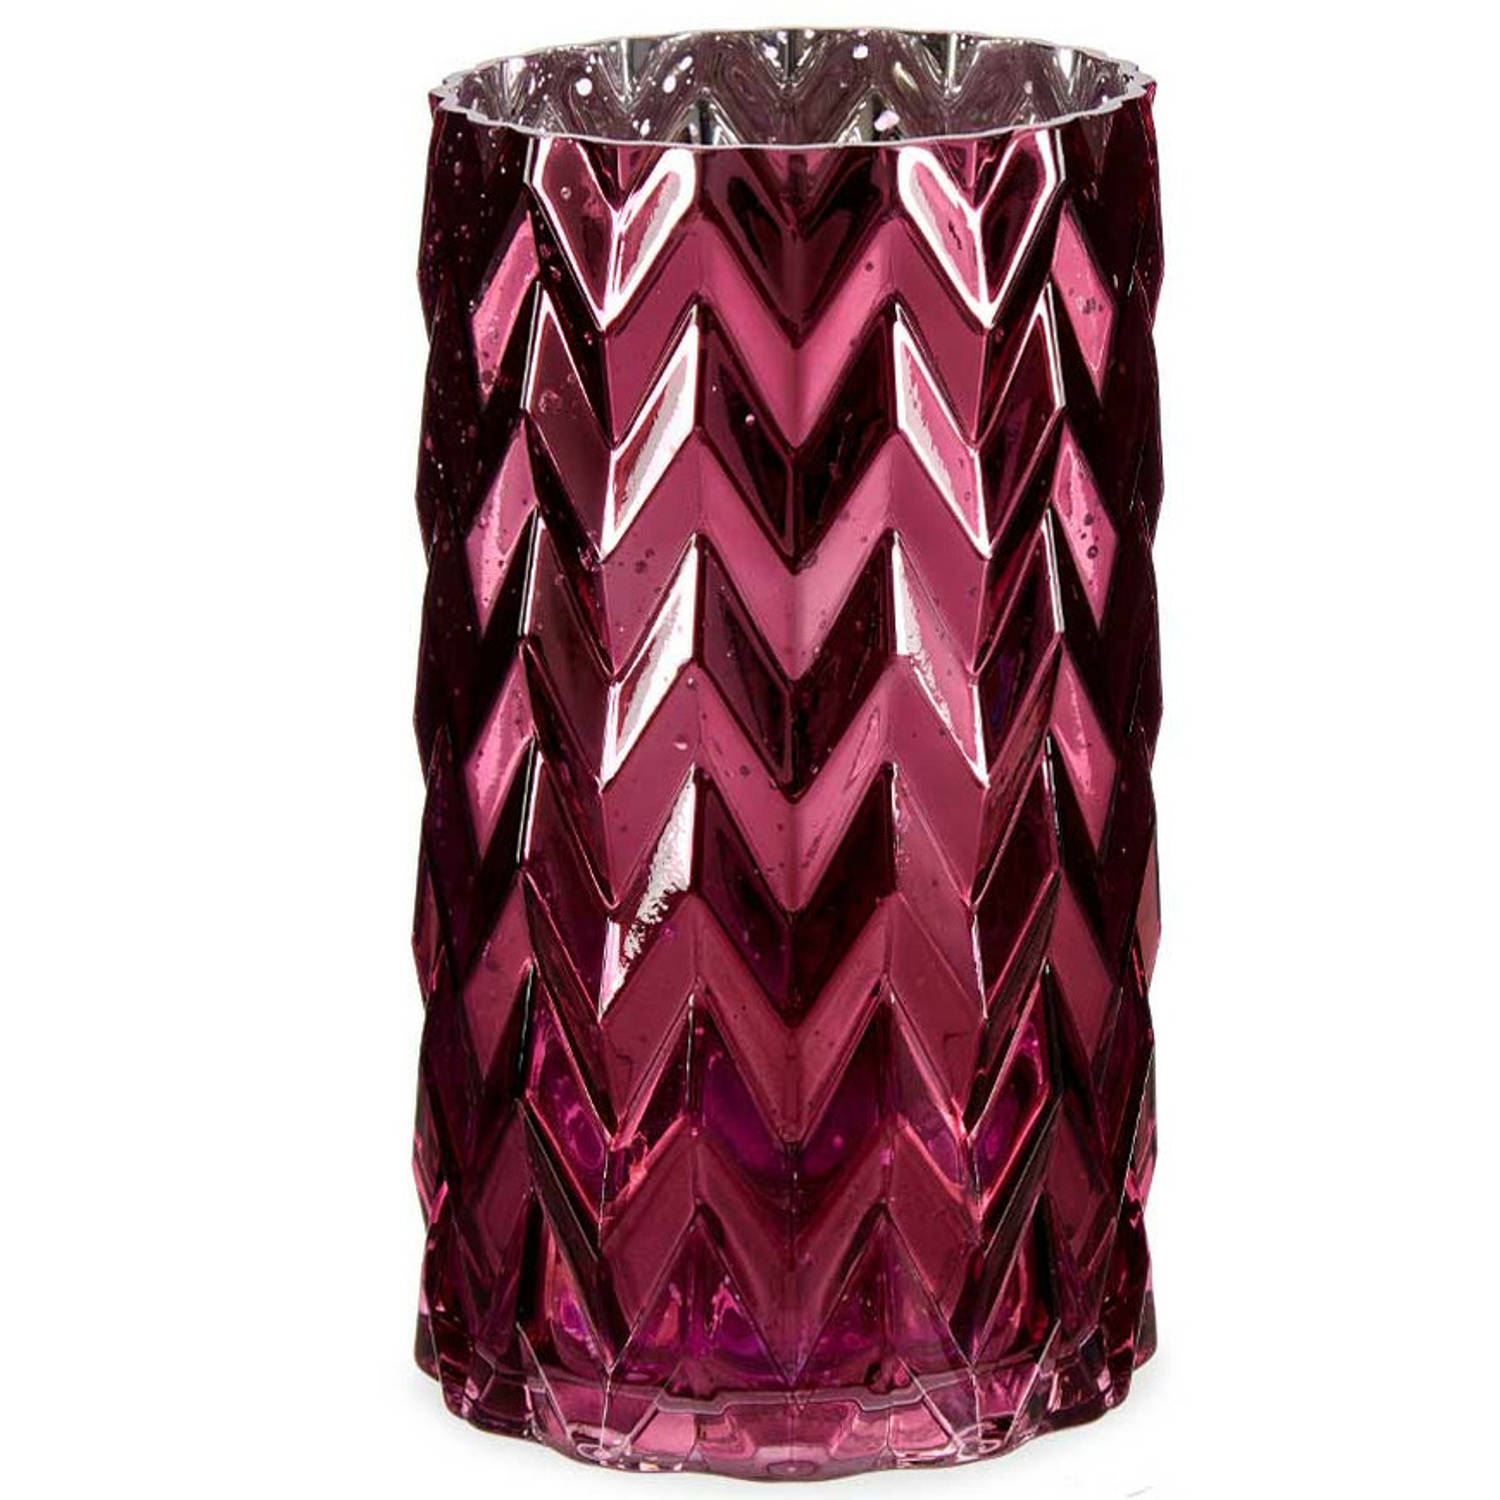 Bloemenvaas luxe decoratie glas donkerroze 11 x 20 cm Vazen